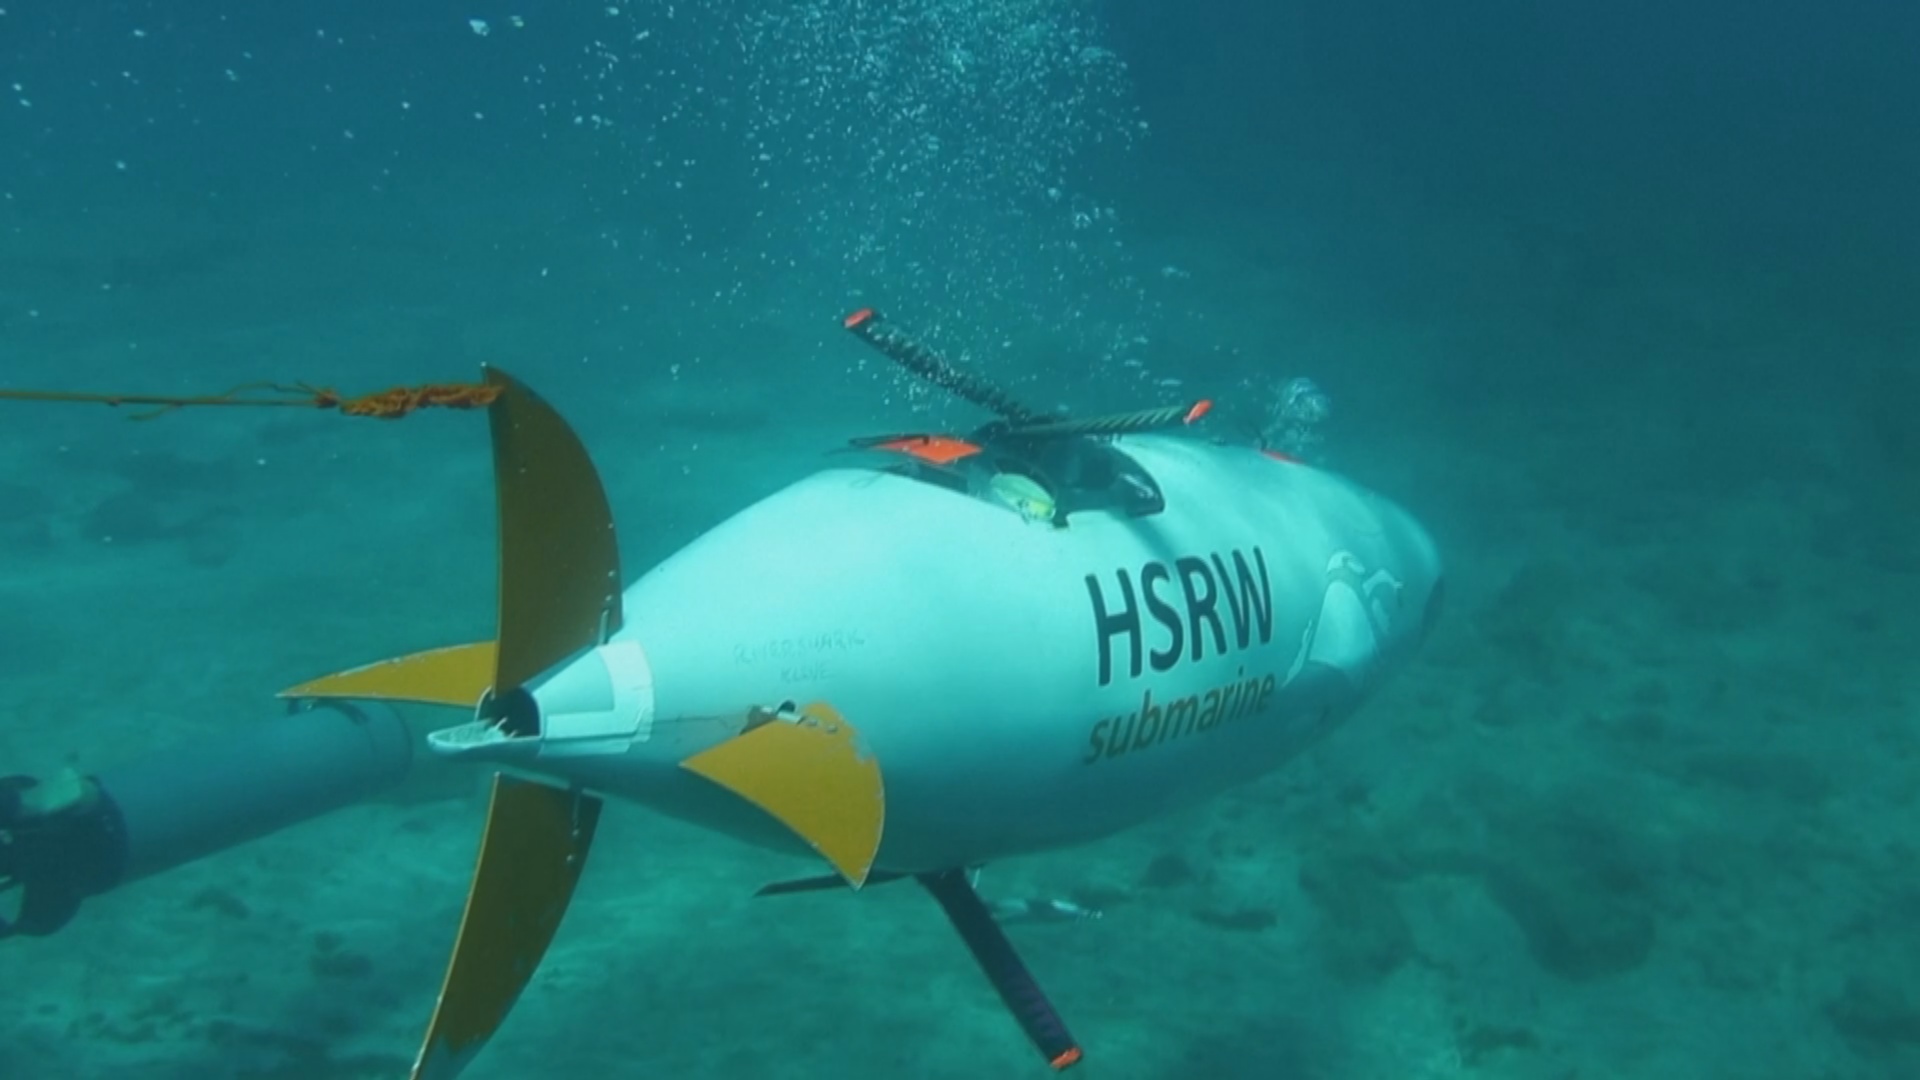 Подводная лодка с педальным приводом поучаствует в гонке